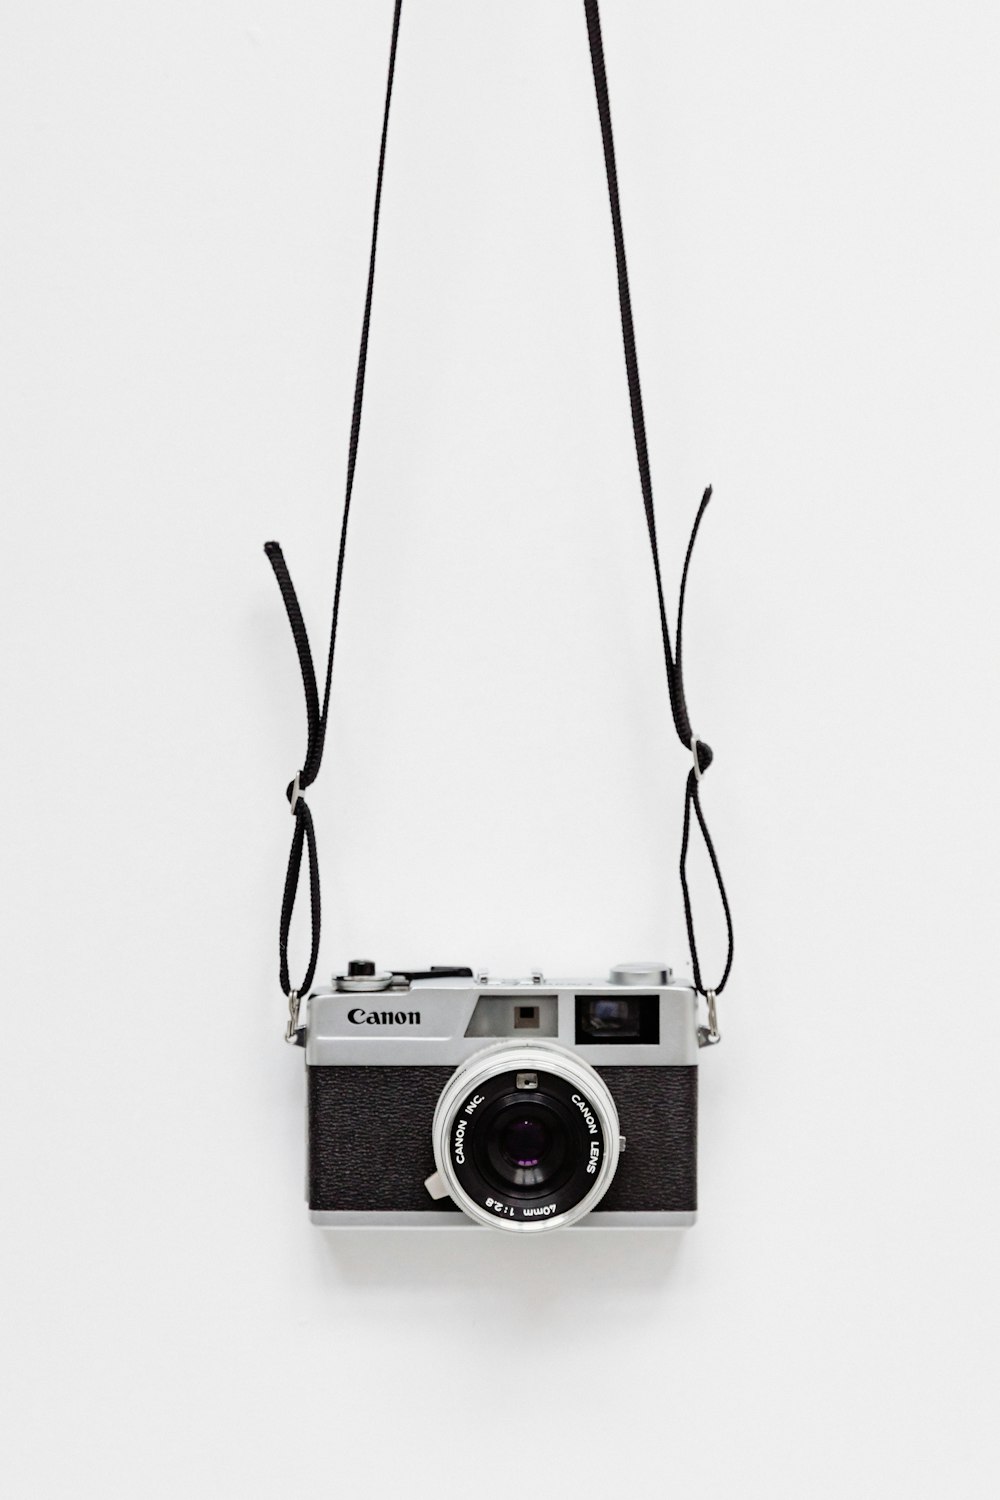 schwarz-graue Canon-Kamera auf weißer Oberfläche